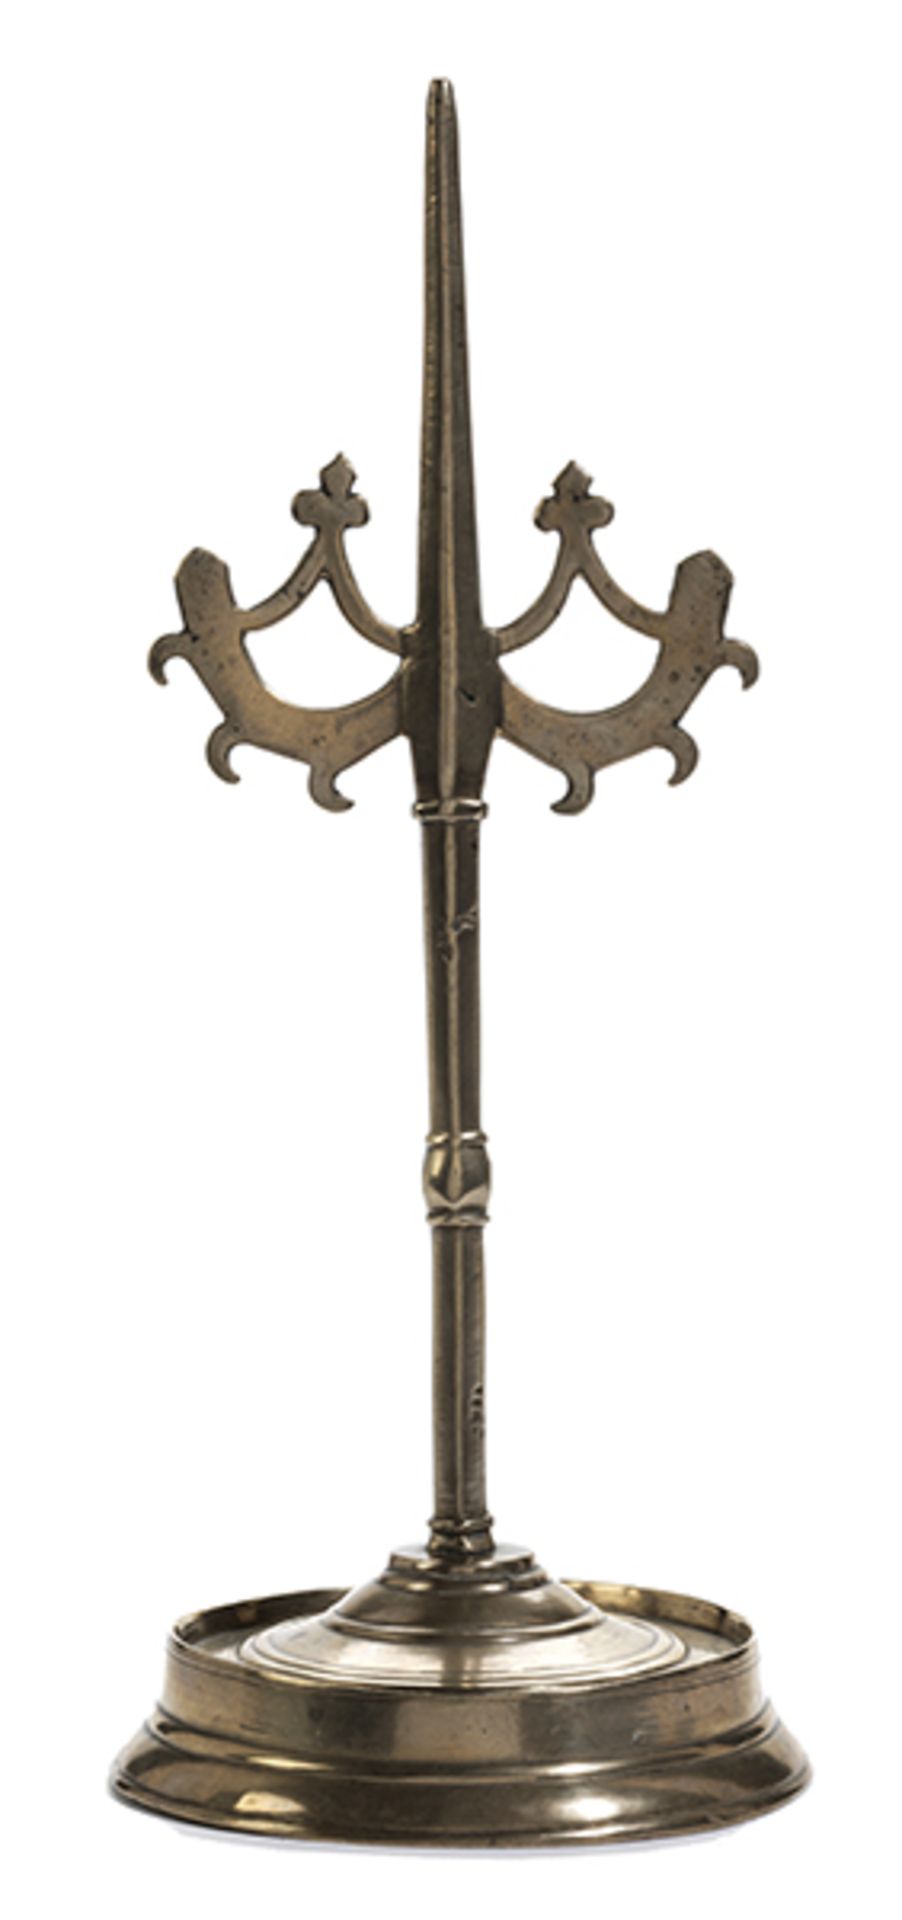 Flämischer LeuchterHöhe: 29 cm. Bodenseitige Inventarnummer "9917". Flandern, 15. Jahrhundert. In